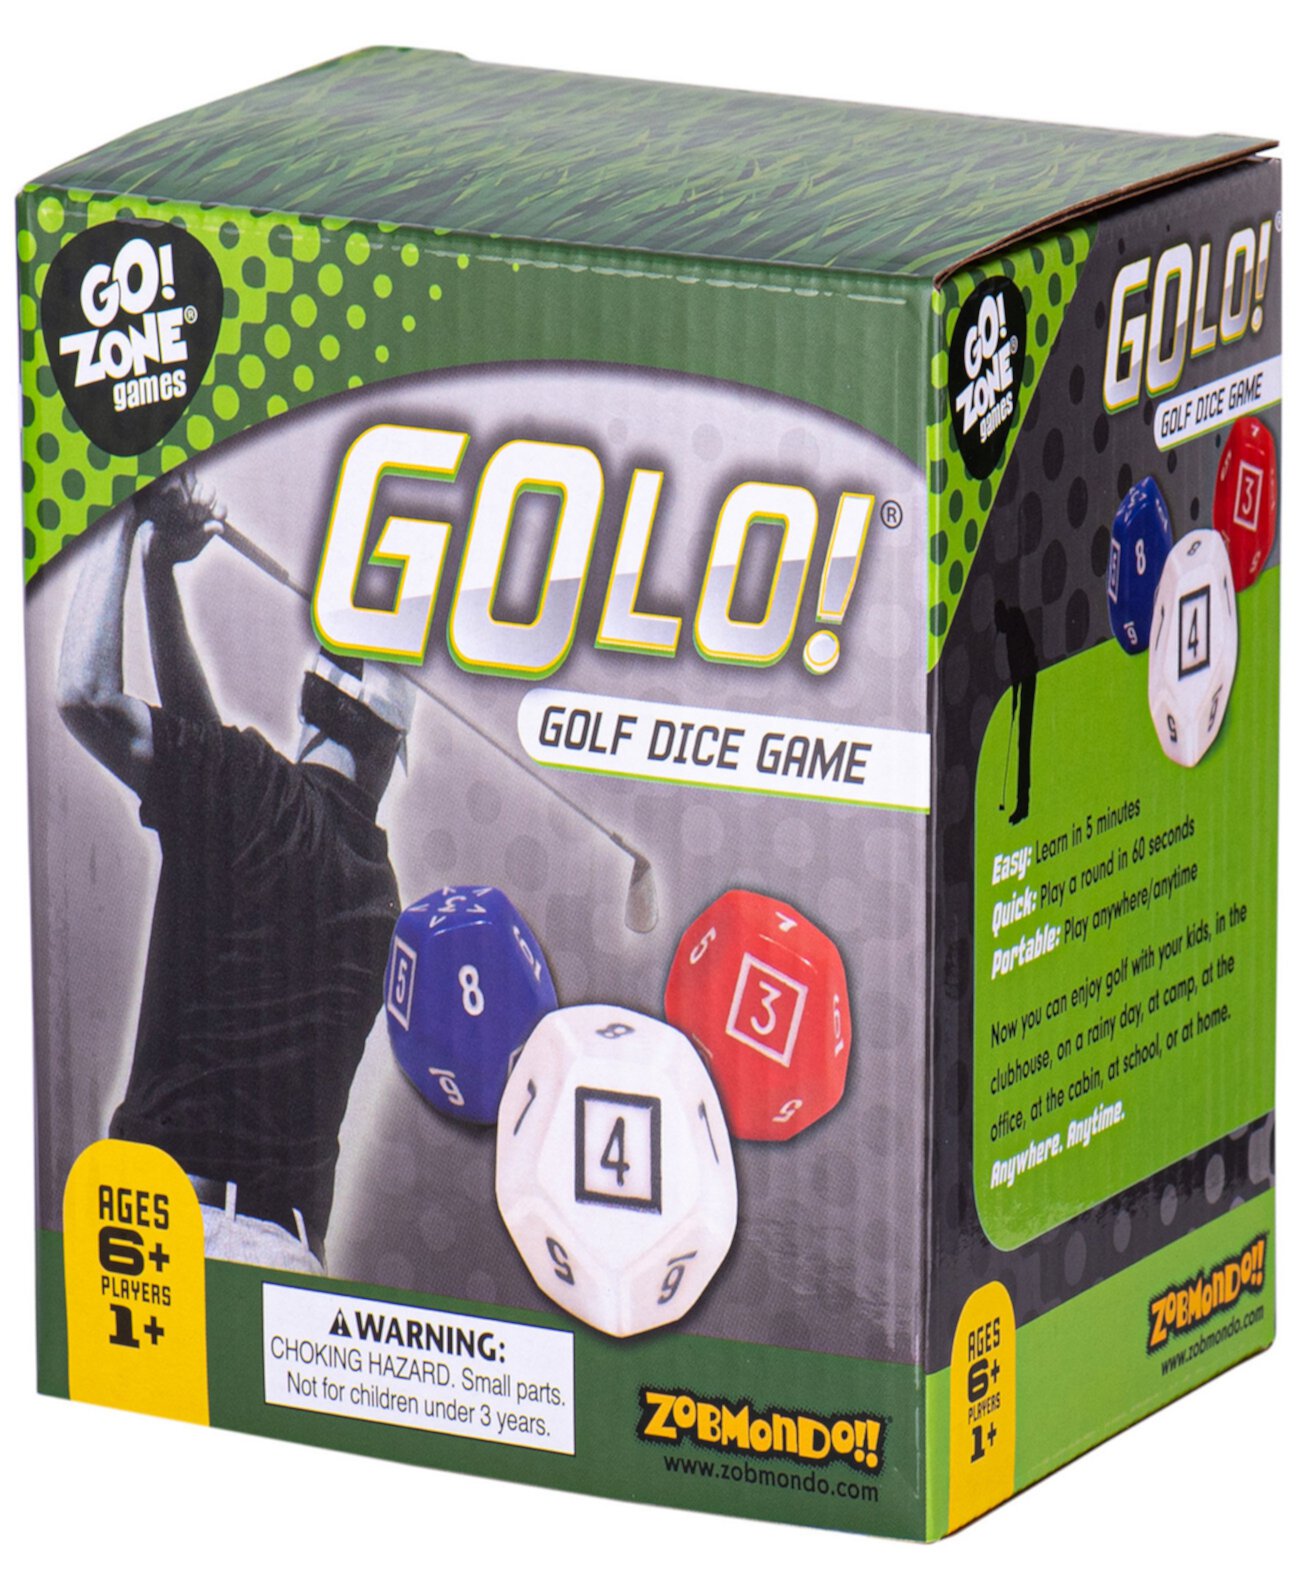 Golo Golf Dice Game, удостоенная награды, увлекательная игра для дома или путешествий Zobmondo